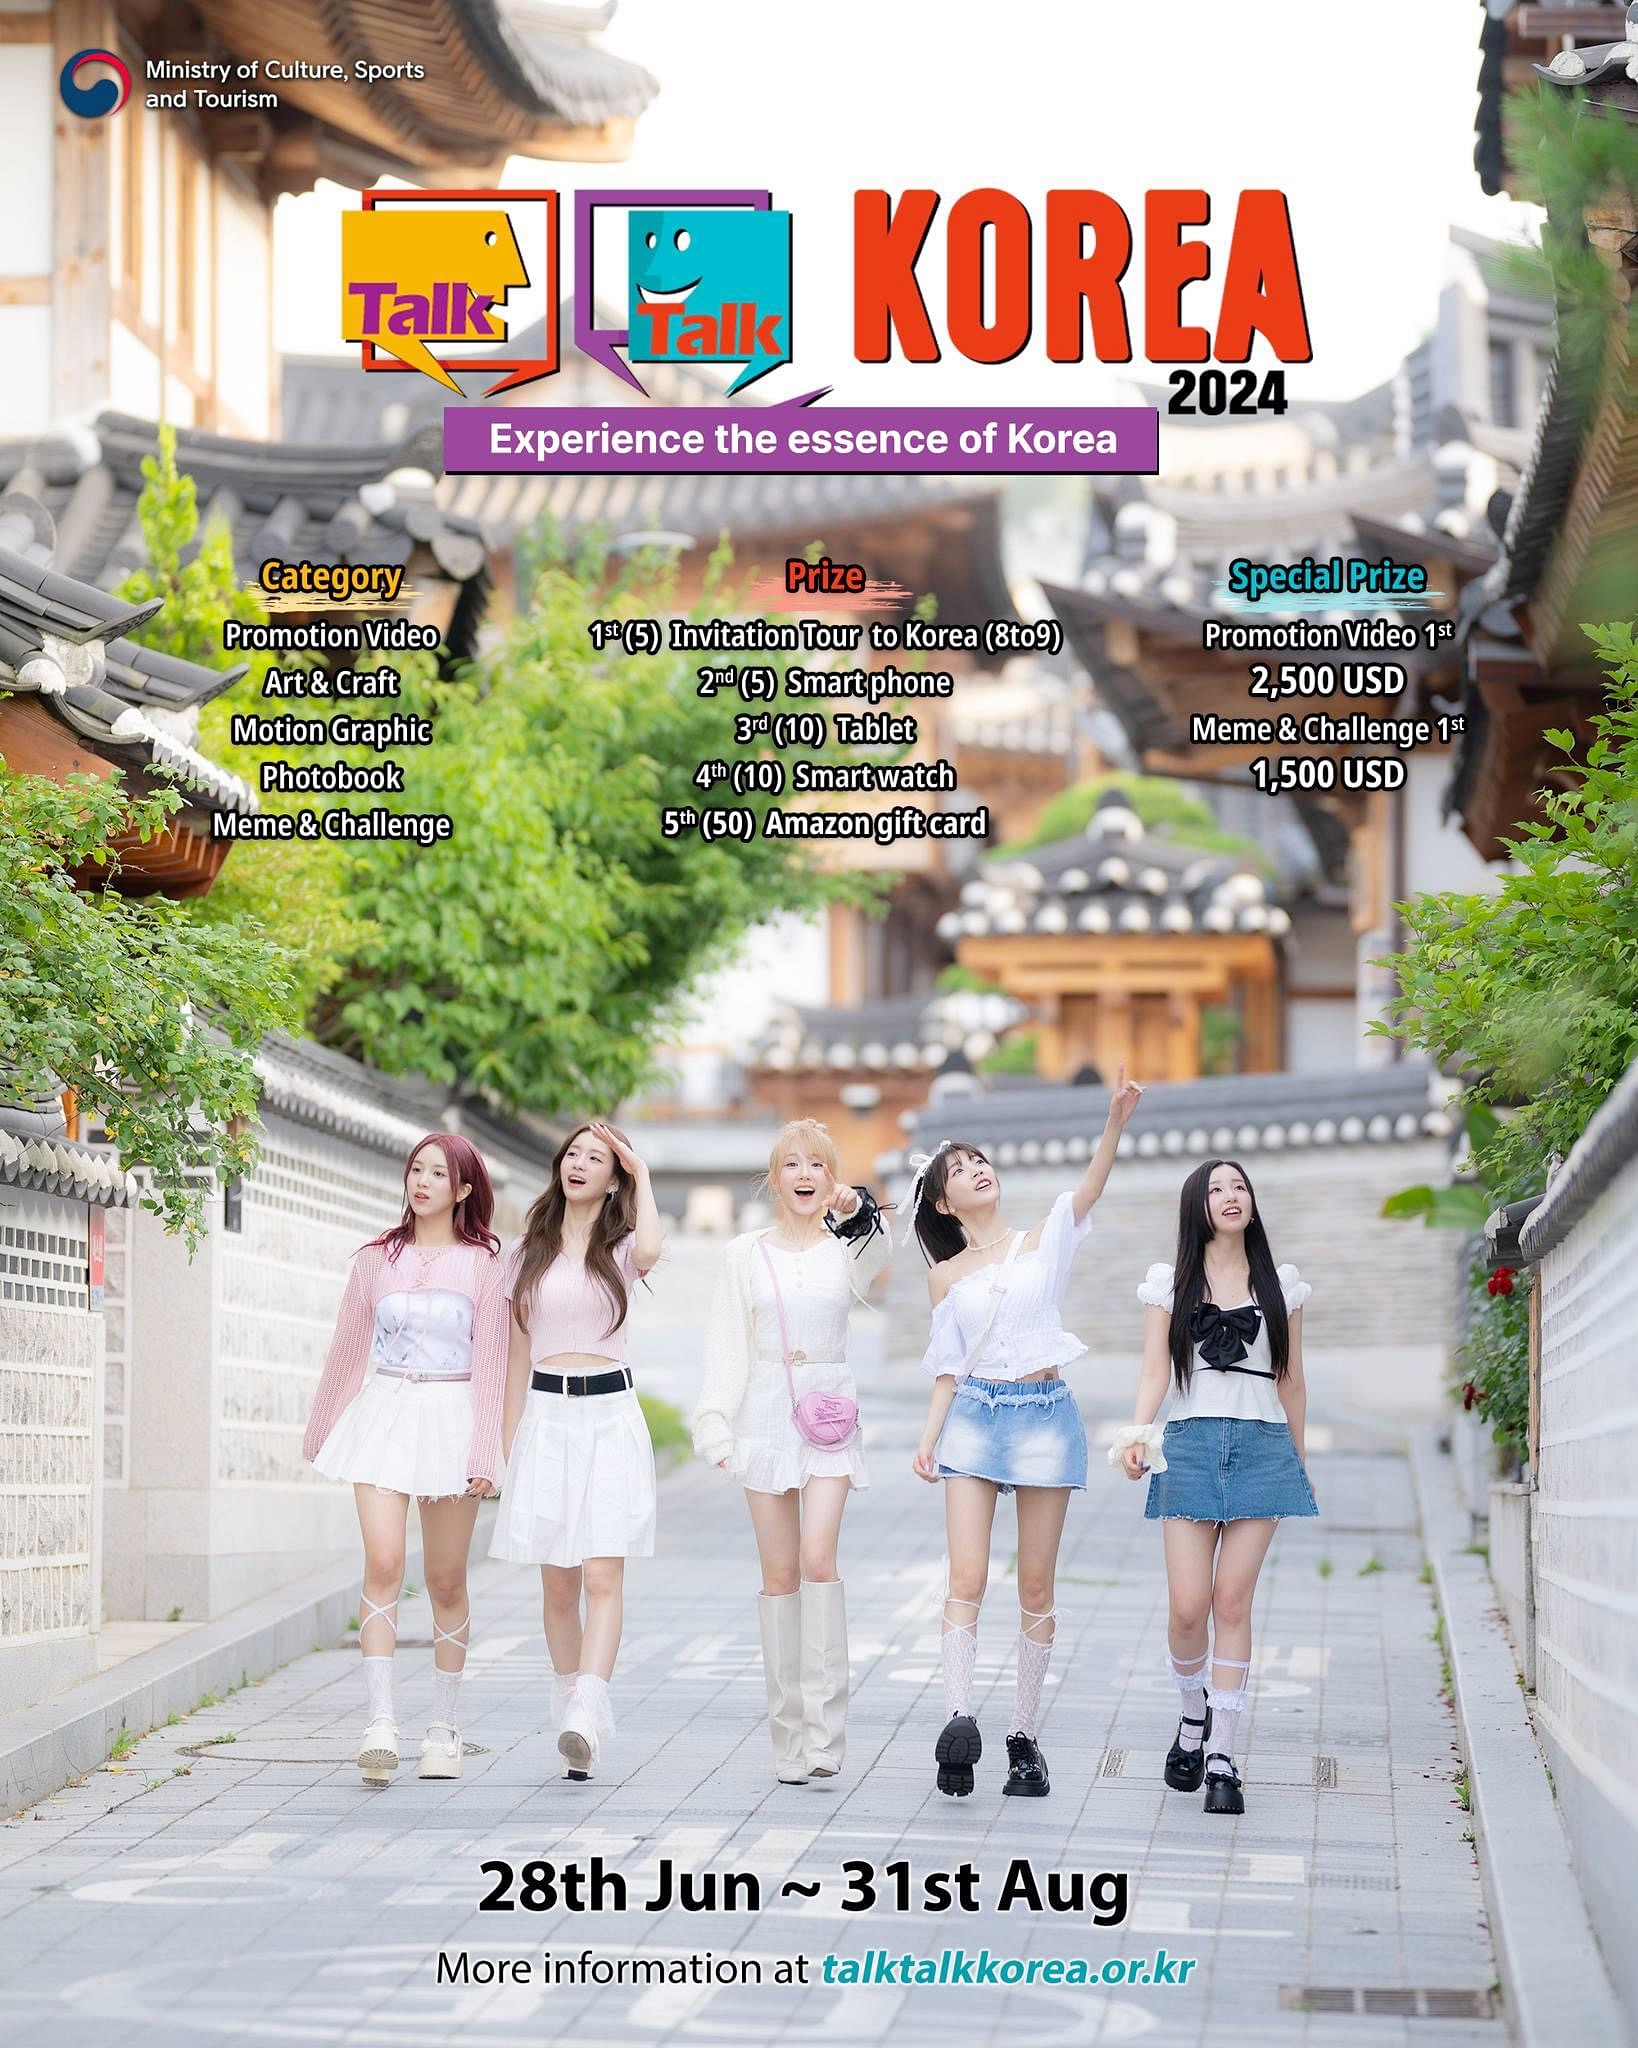 Международный конкурс контента «Talk Talk Korea 2024» пройдет с 28 июня по 31 августа. / Фото: Министерство культуры, спорта и туризма РК